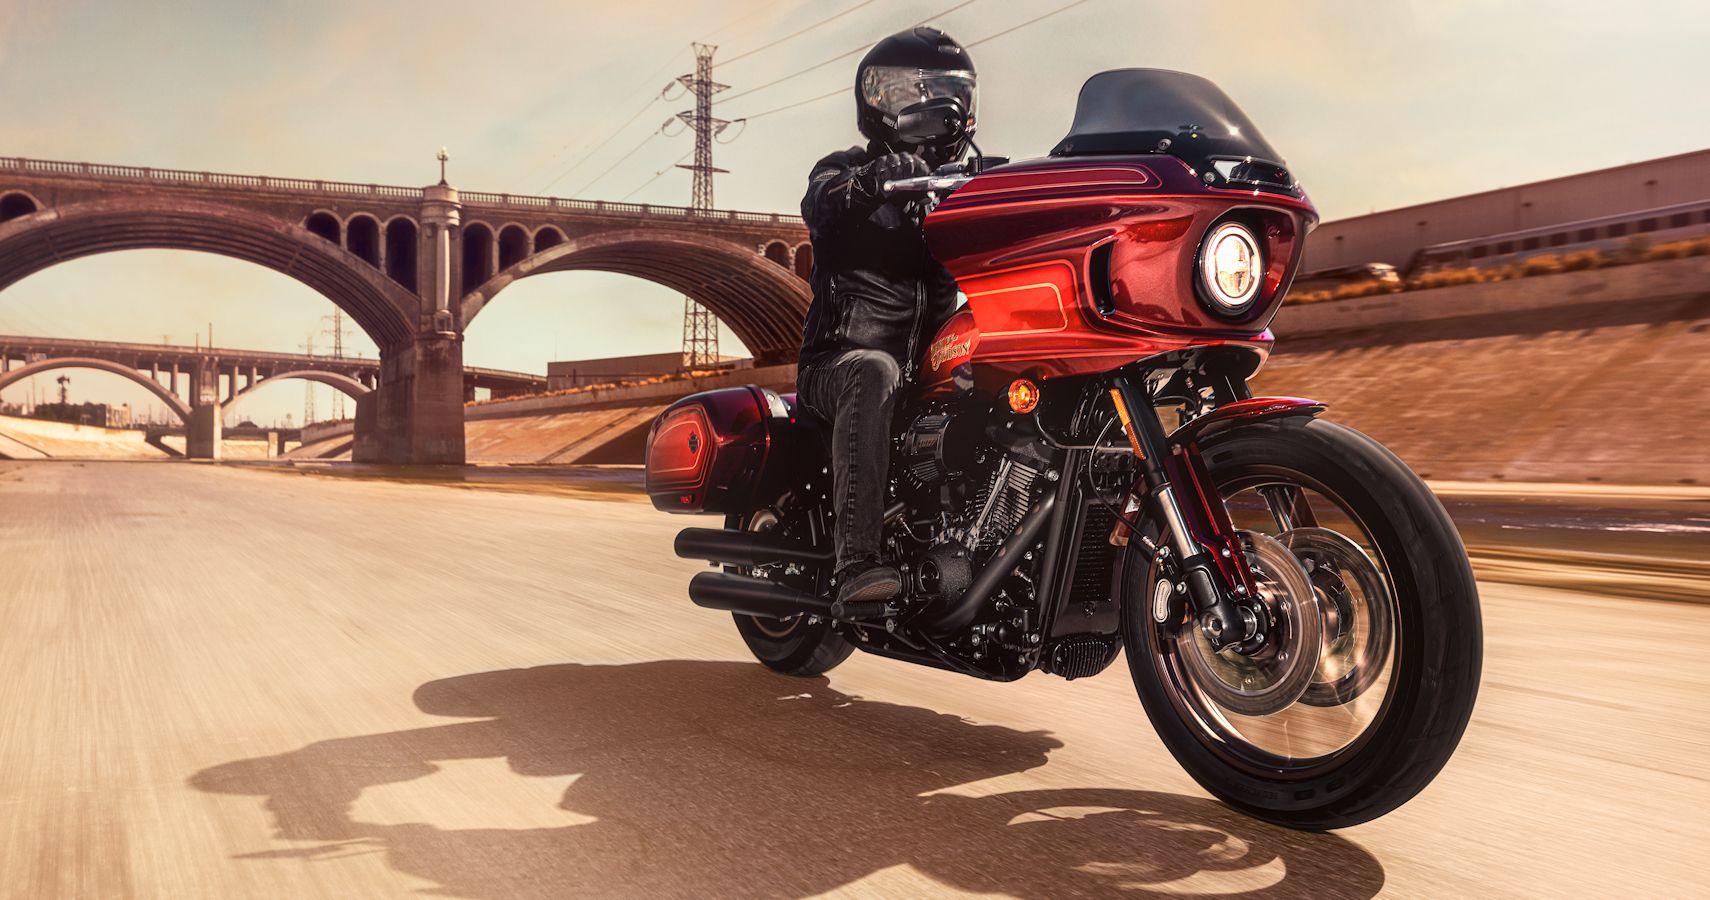 2022 Harley-Davidson Low Rider El Diablo riding in the dry sluice